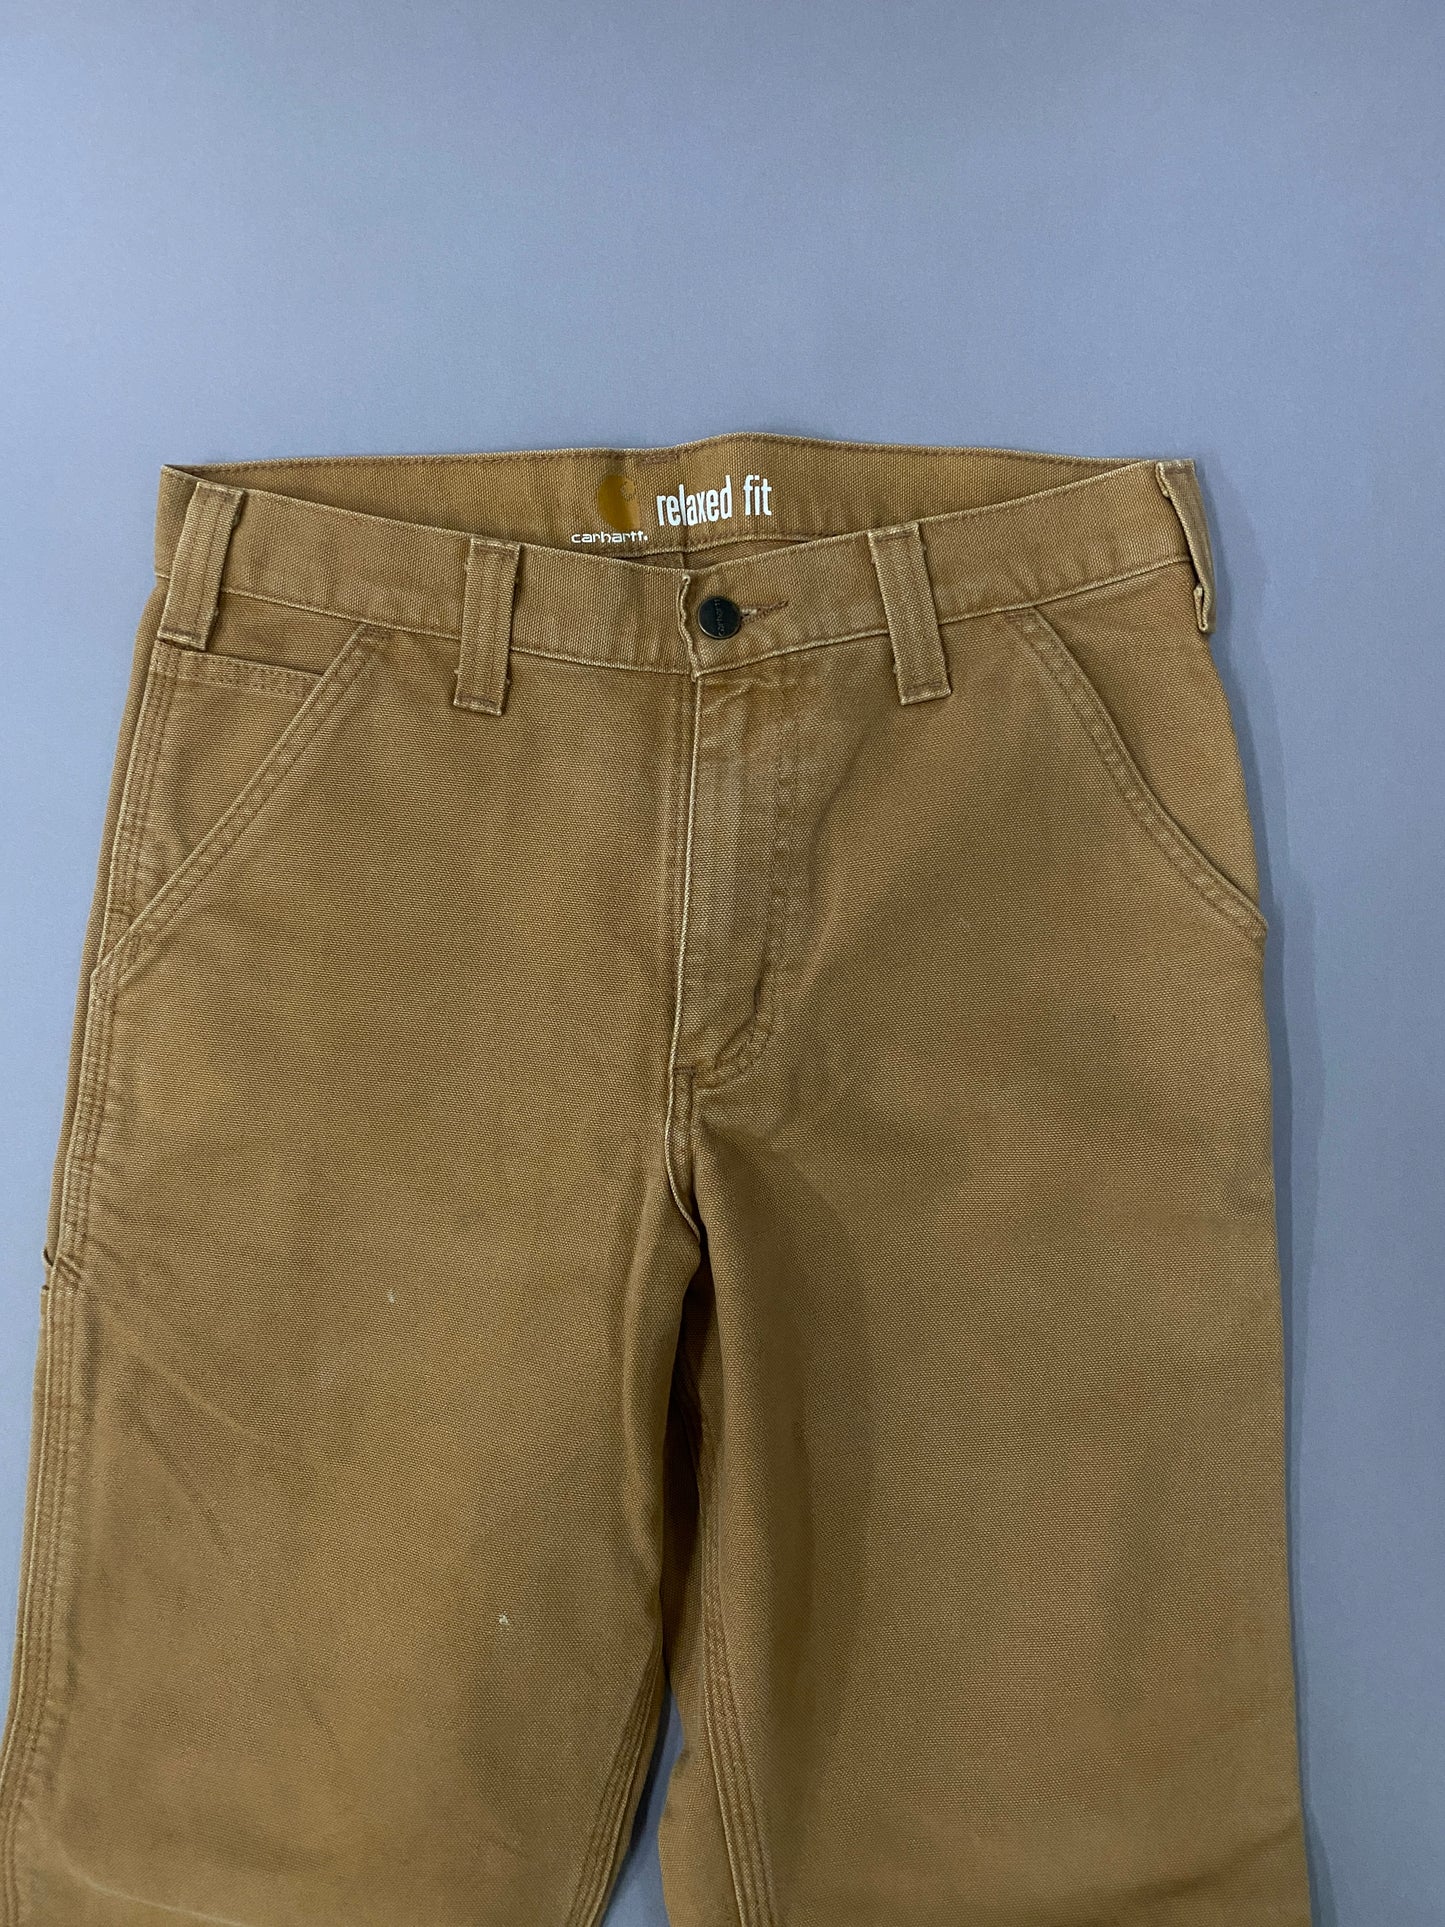 Pantalones Carhartt Carpenter - 30 x 34